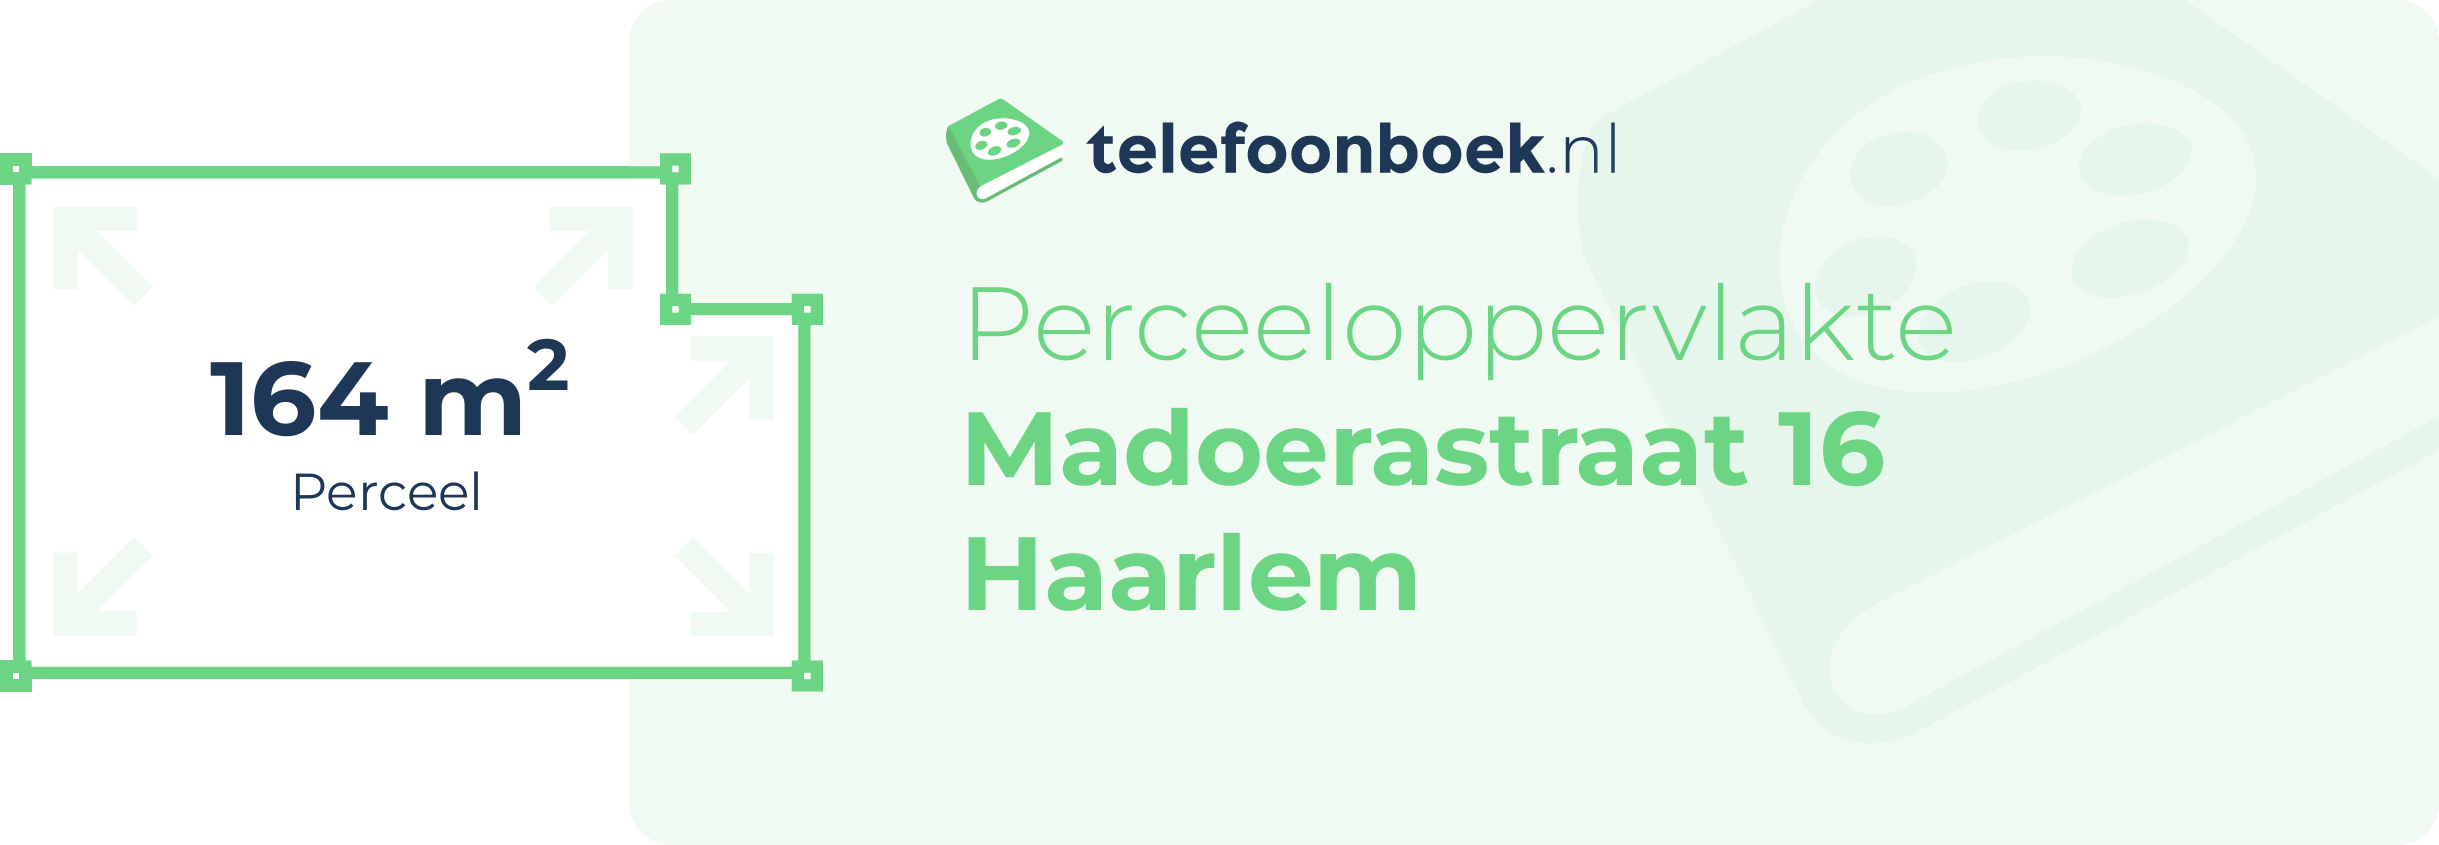 Perceeloppervlakte Madoerastraat 16 Haarlem